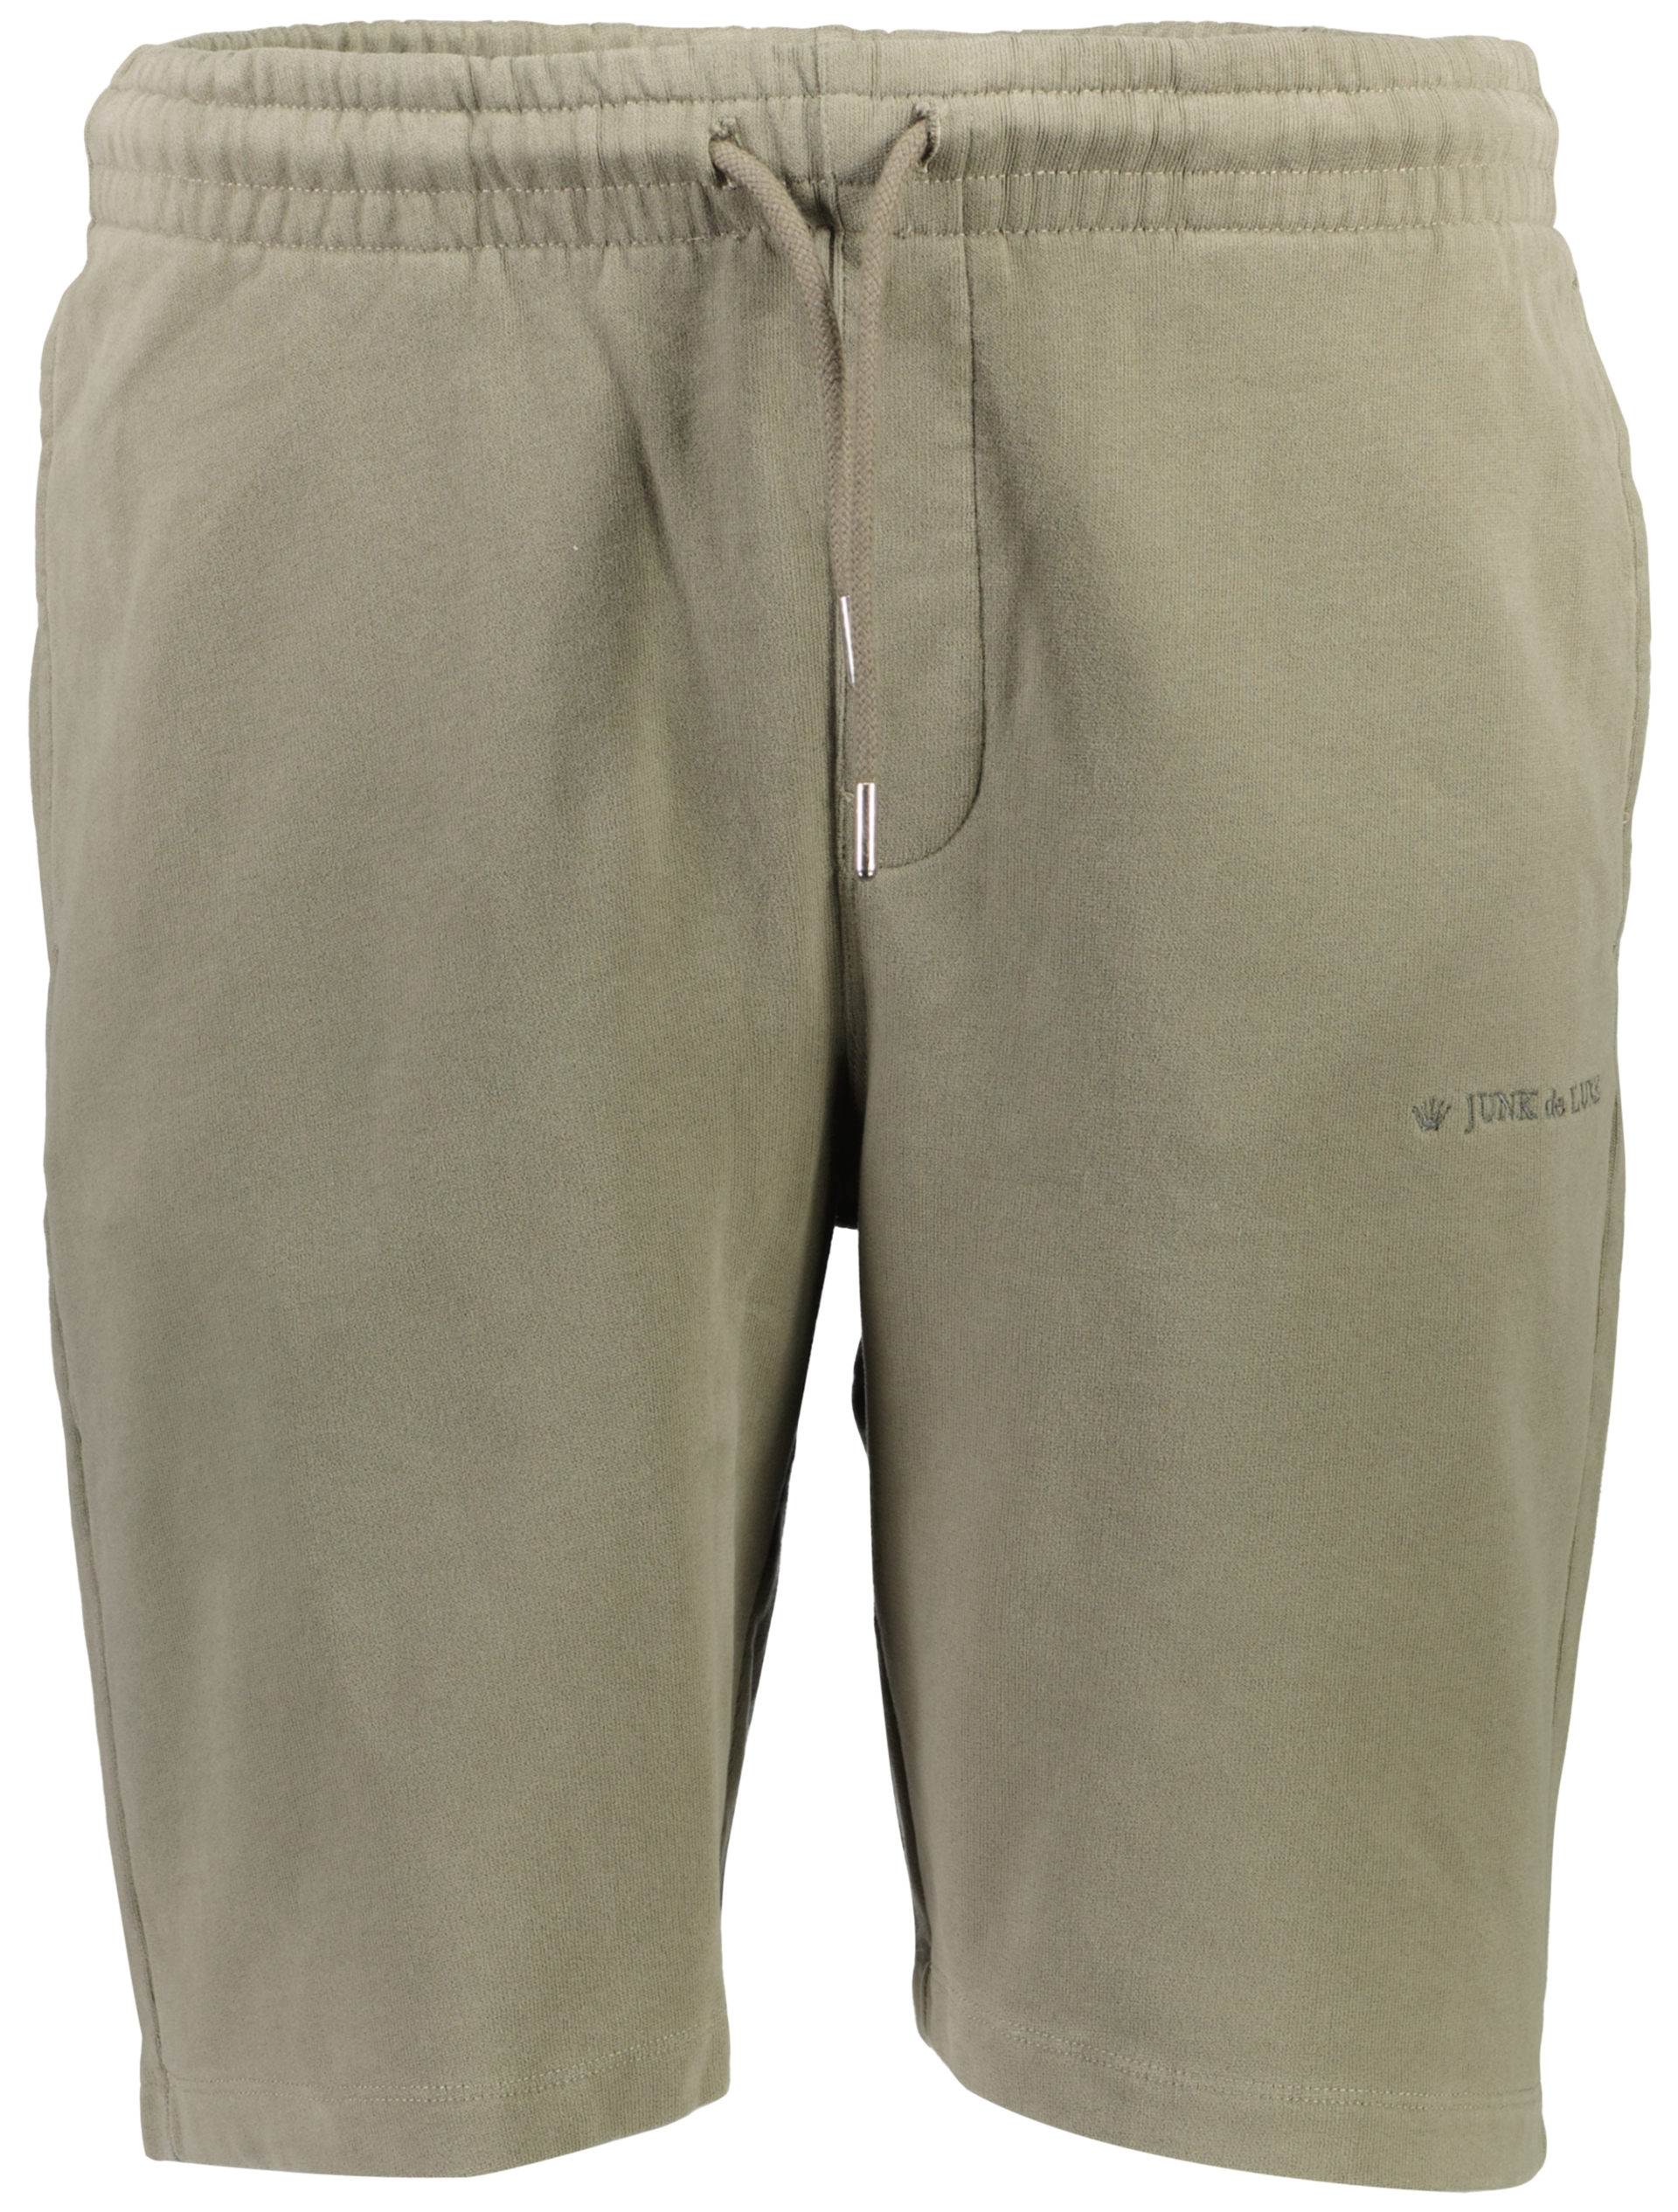 Junk de Luxe Casual shorts grøn / lt dusty army